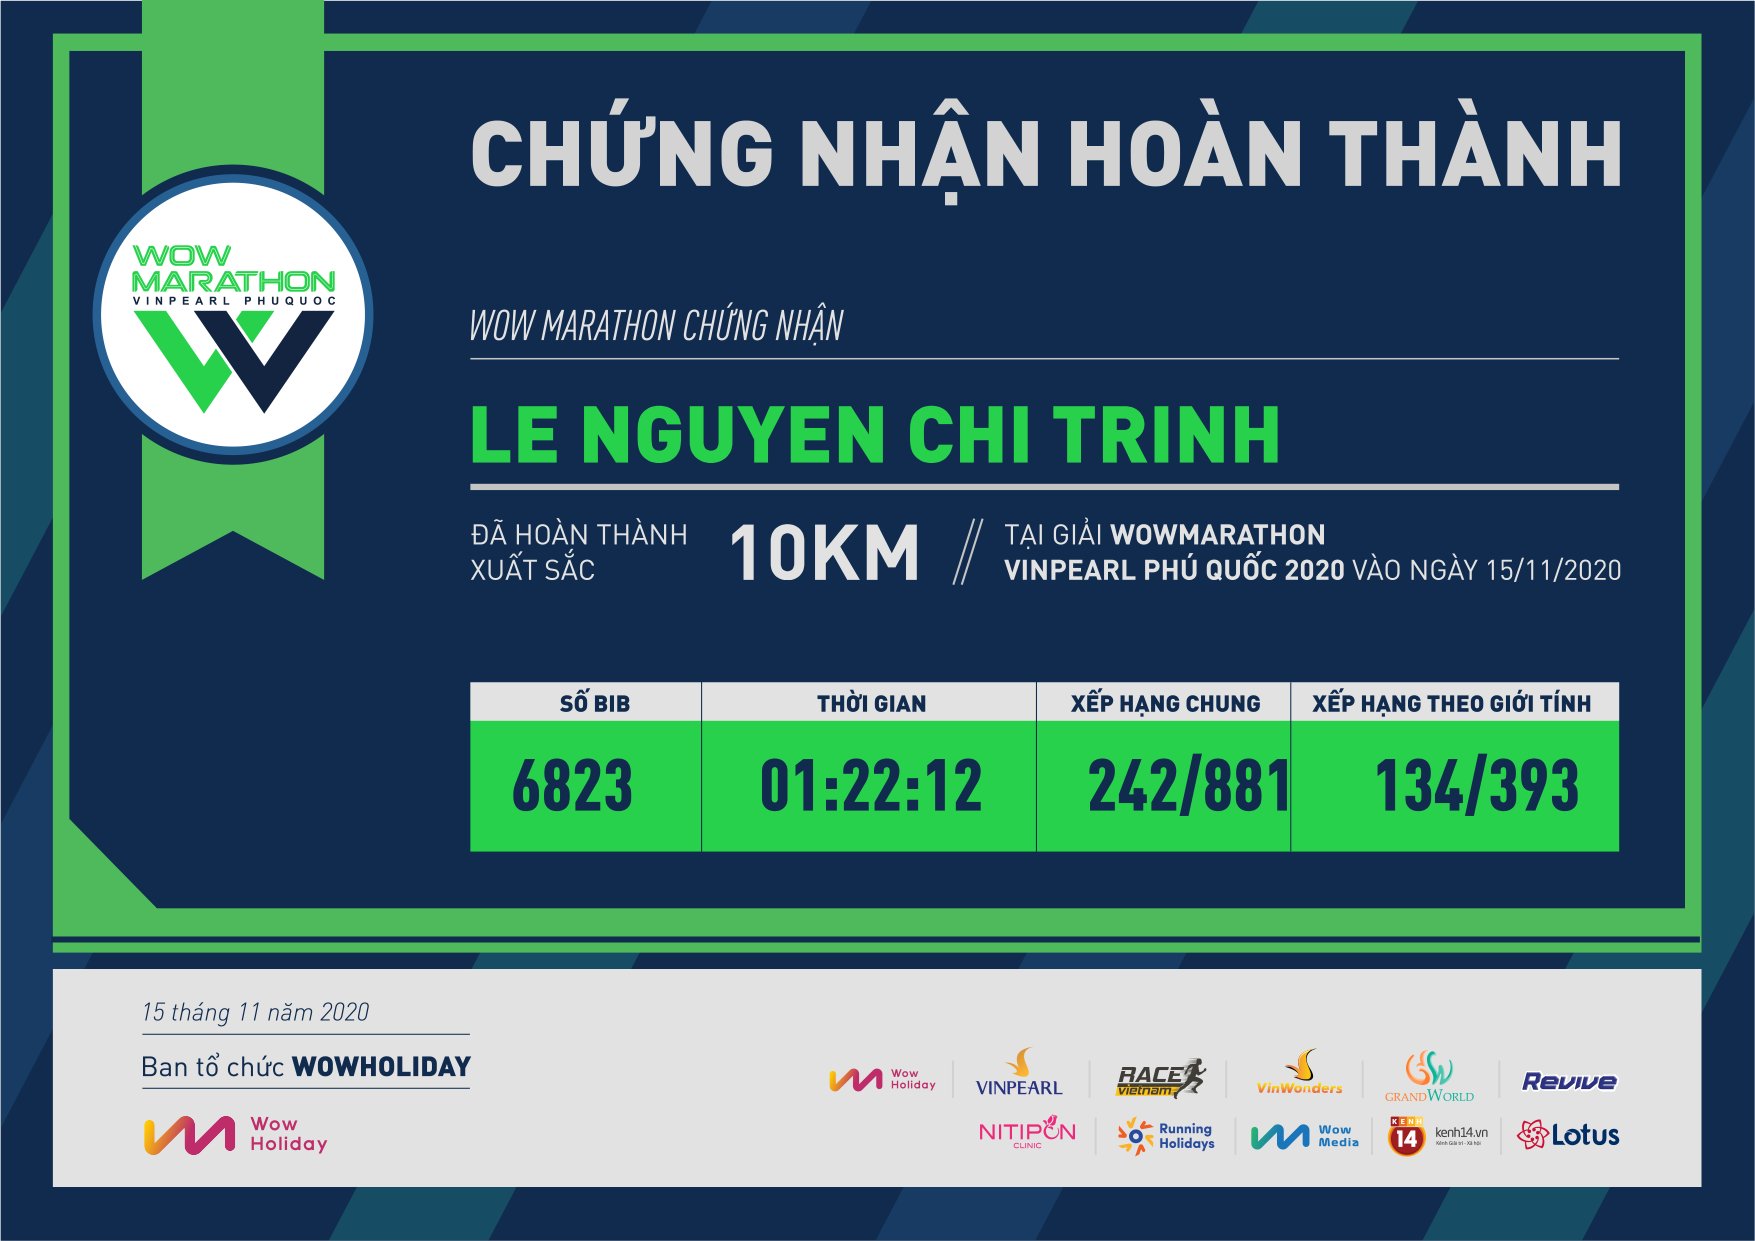 6823 - Le Nguyen Chi Trinh